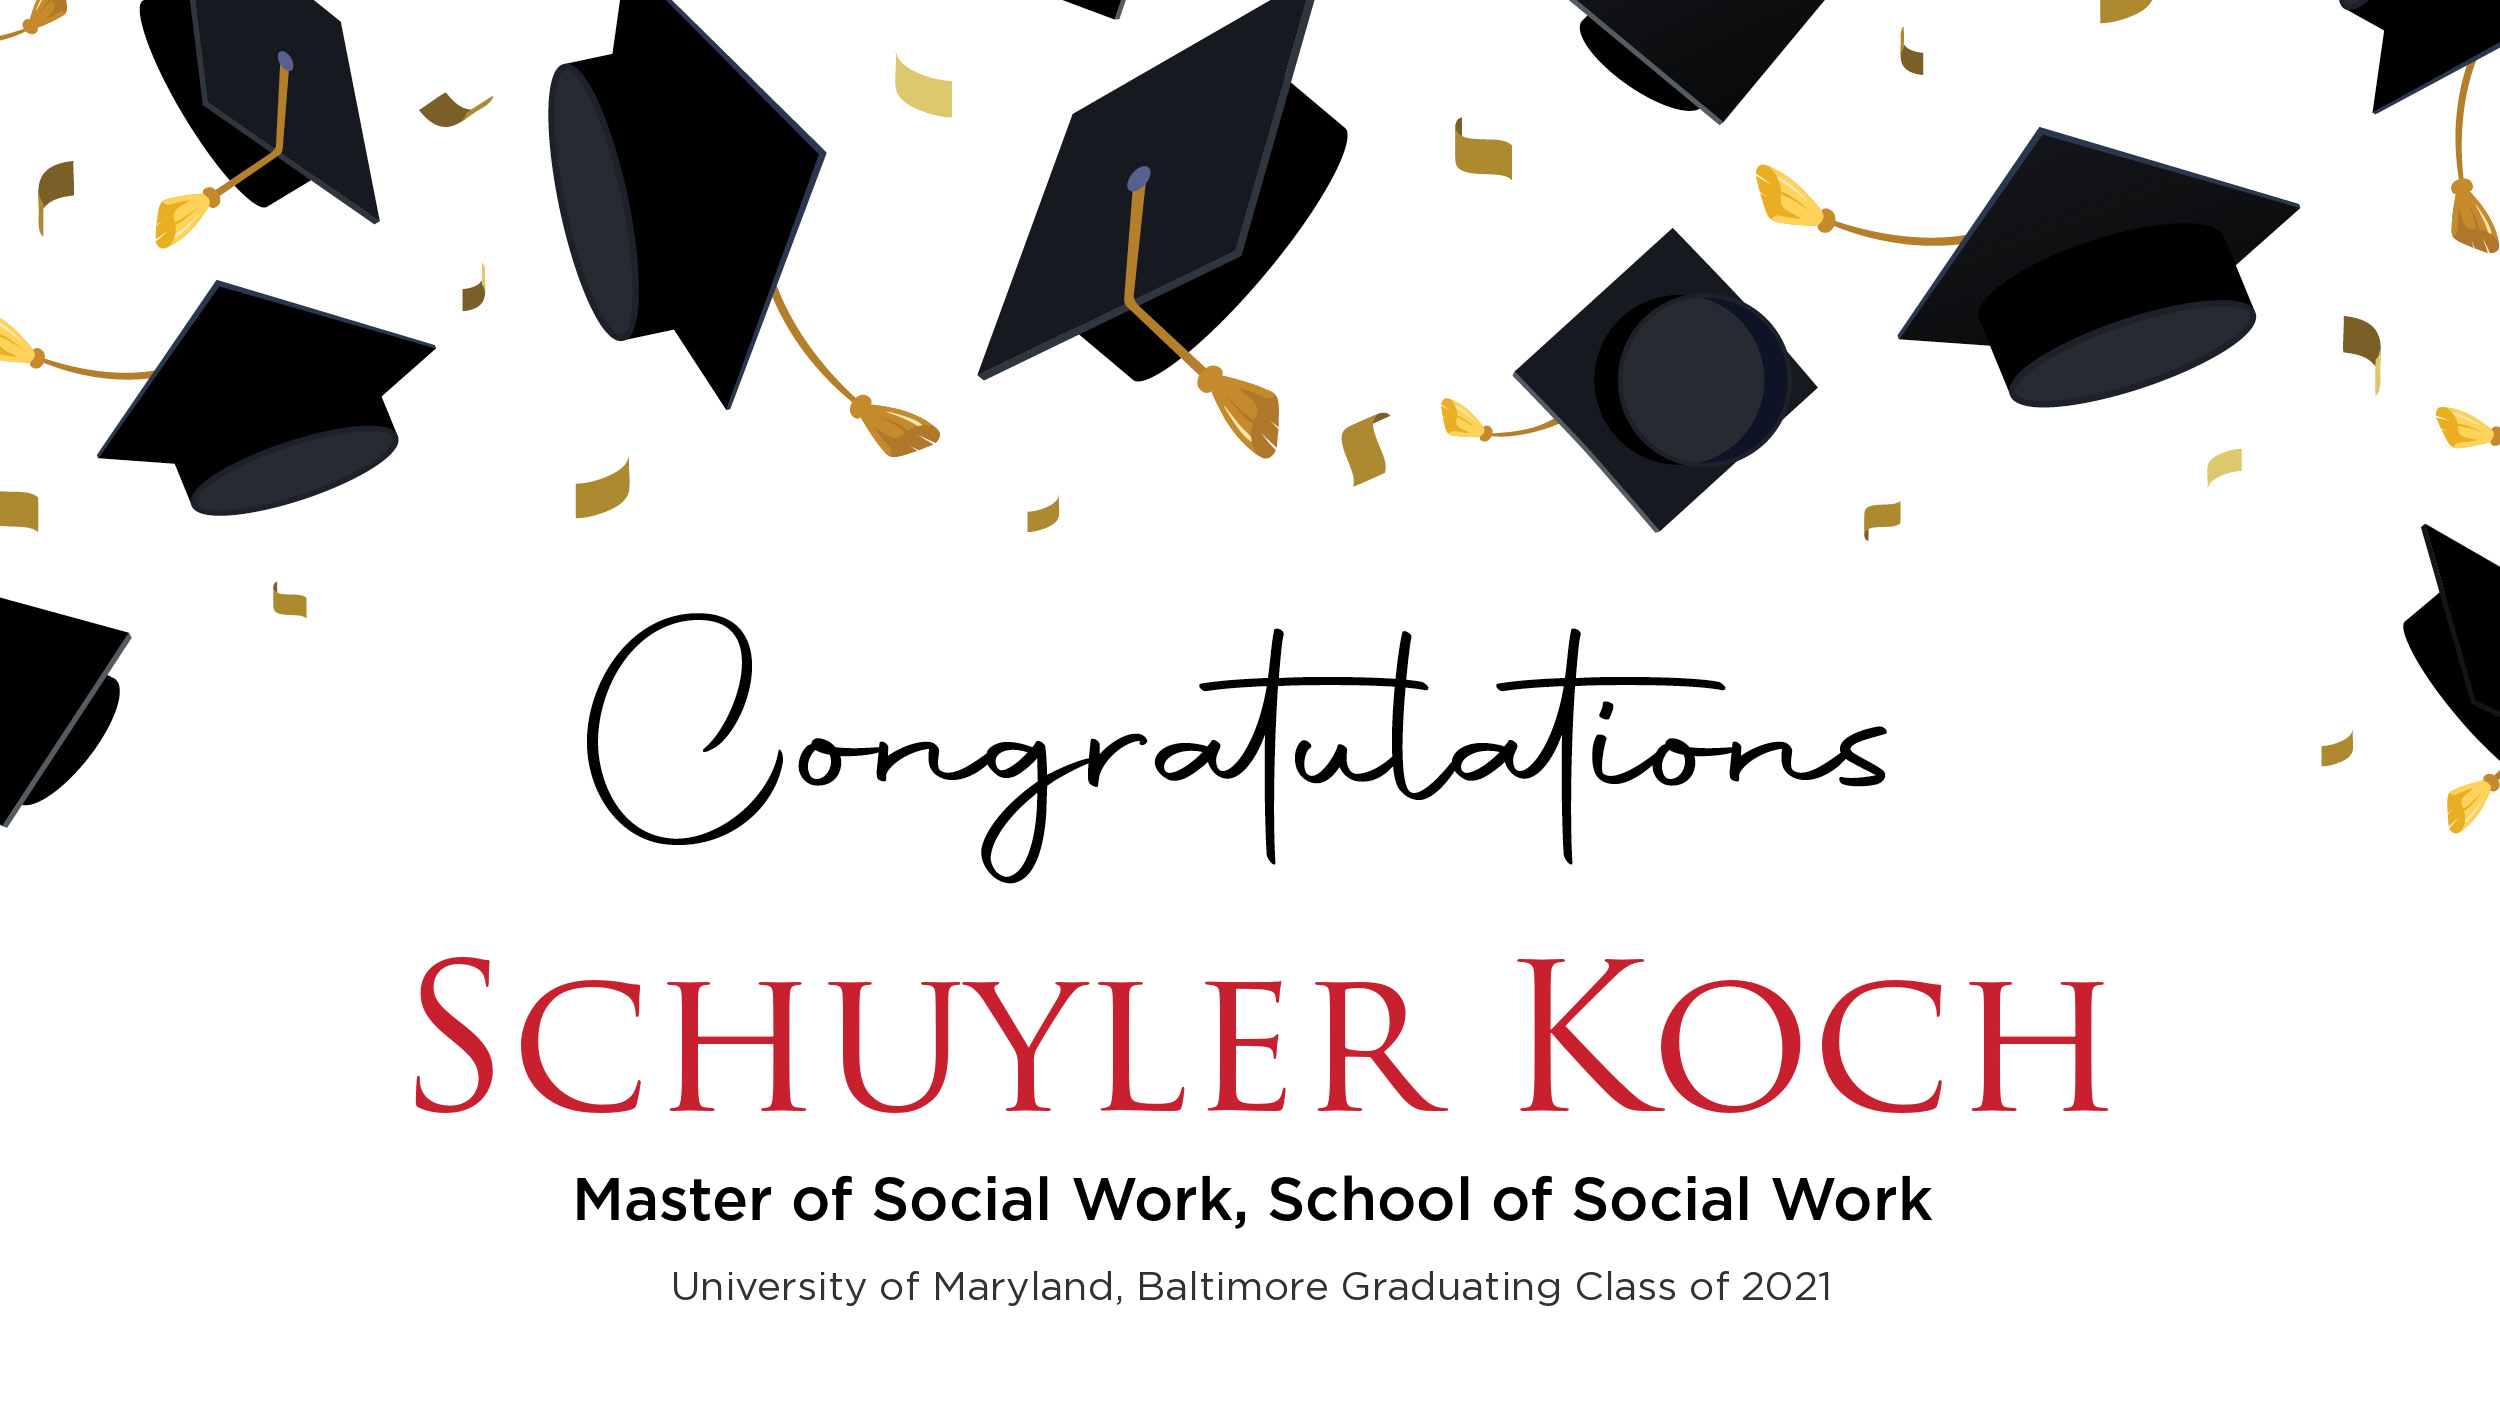 Congratulations Schuyler Koch, Master of Social Work